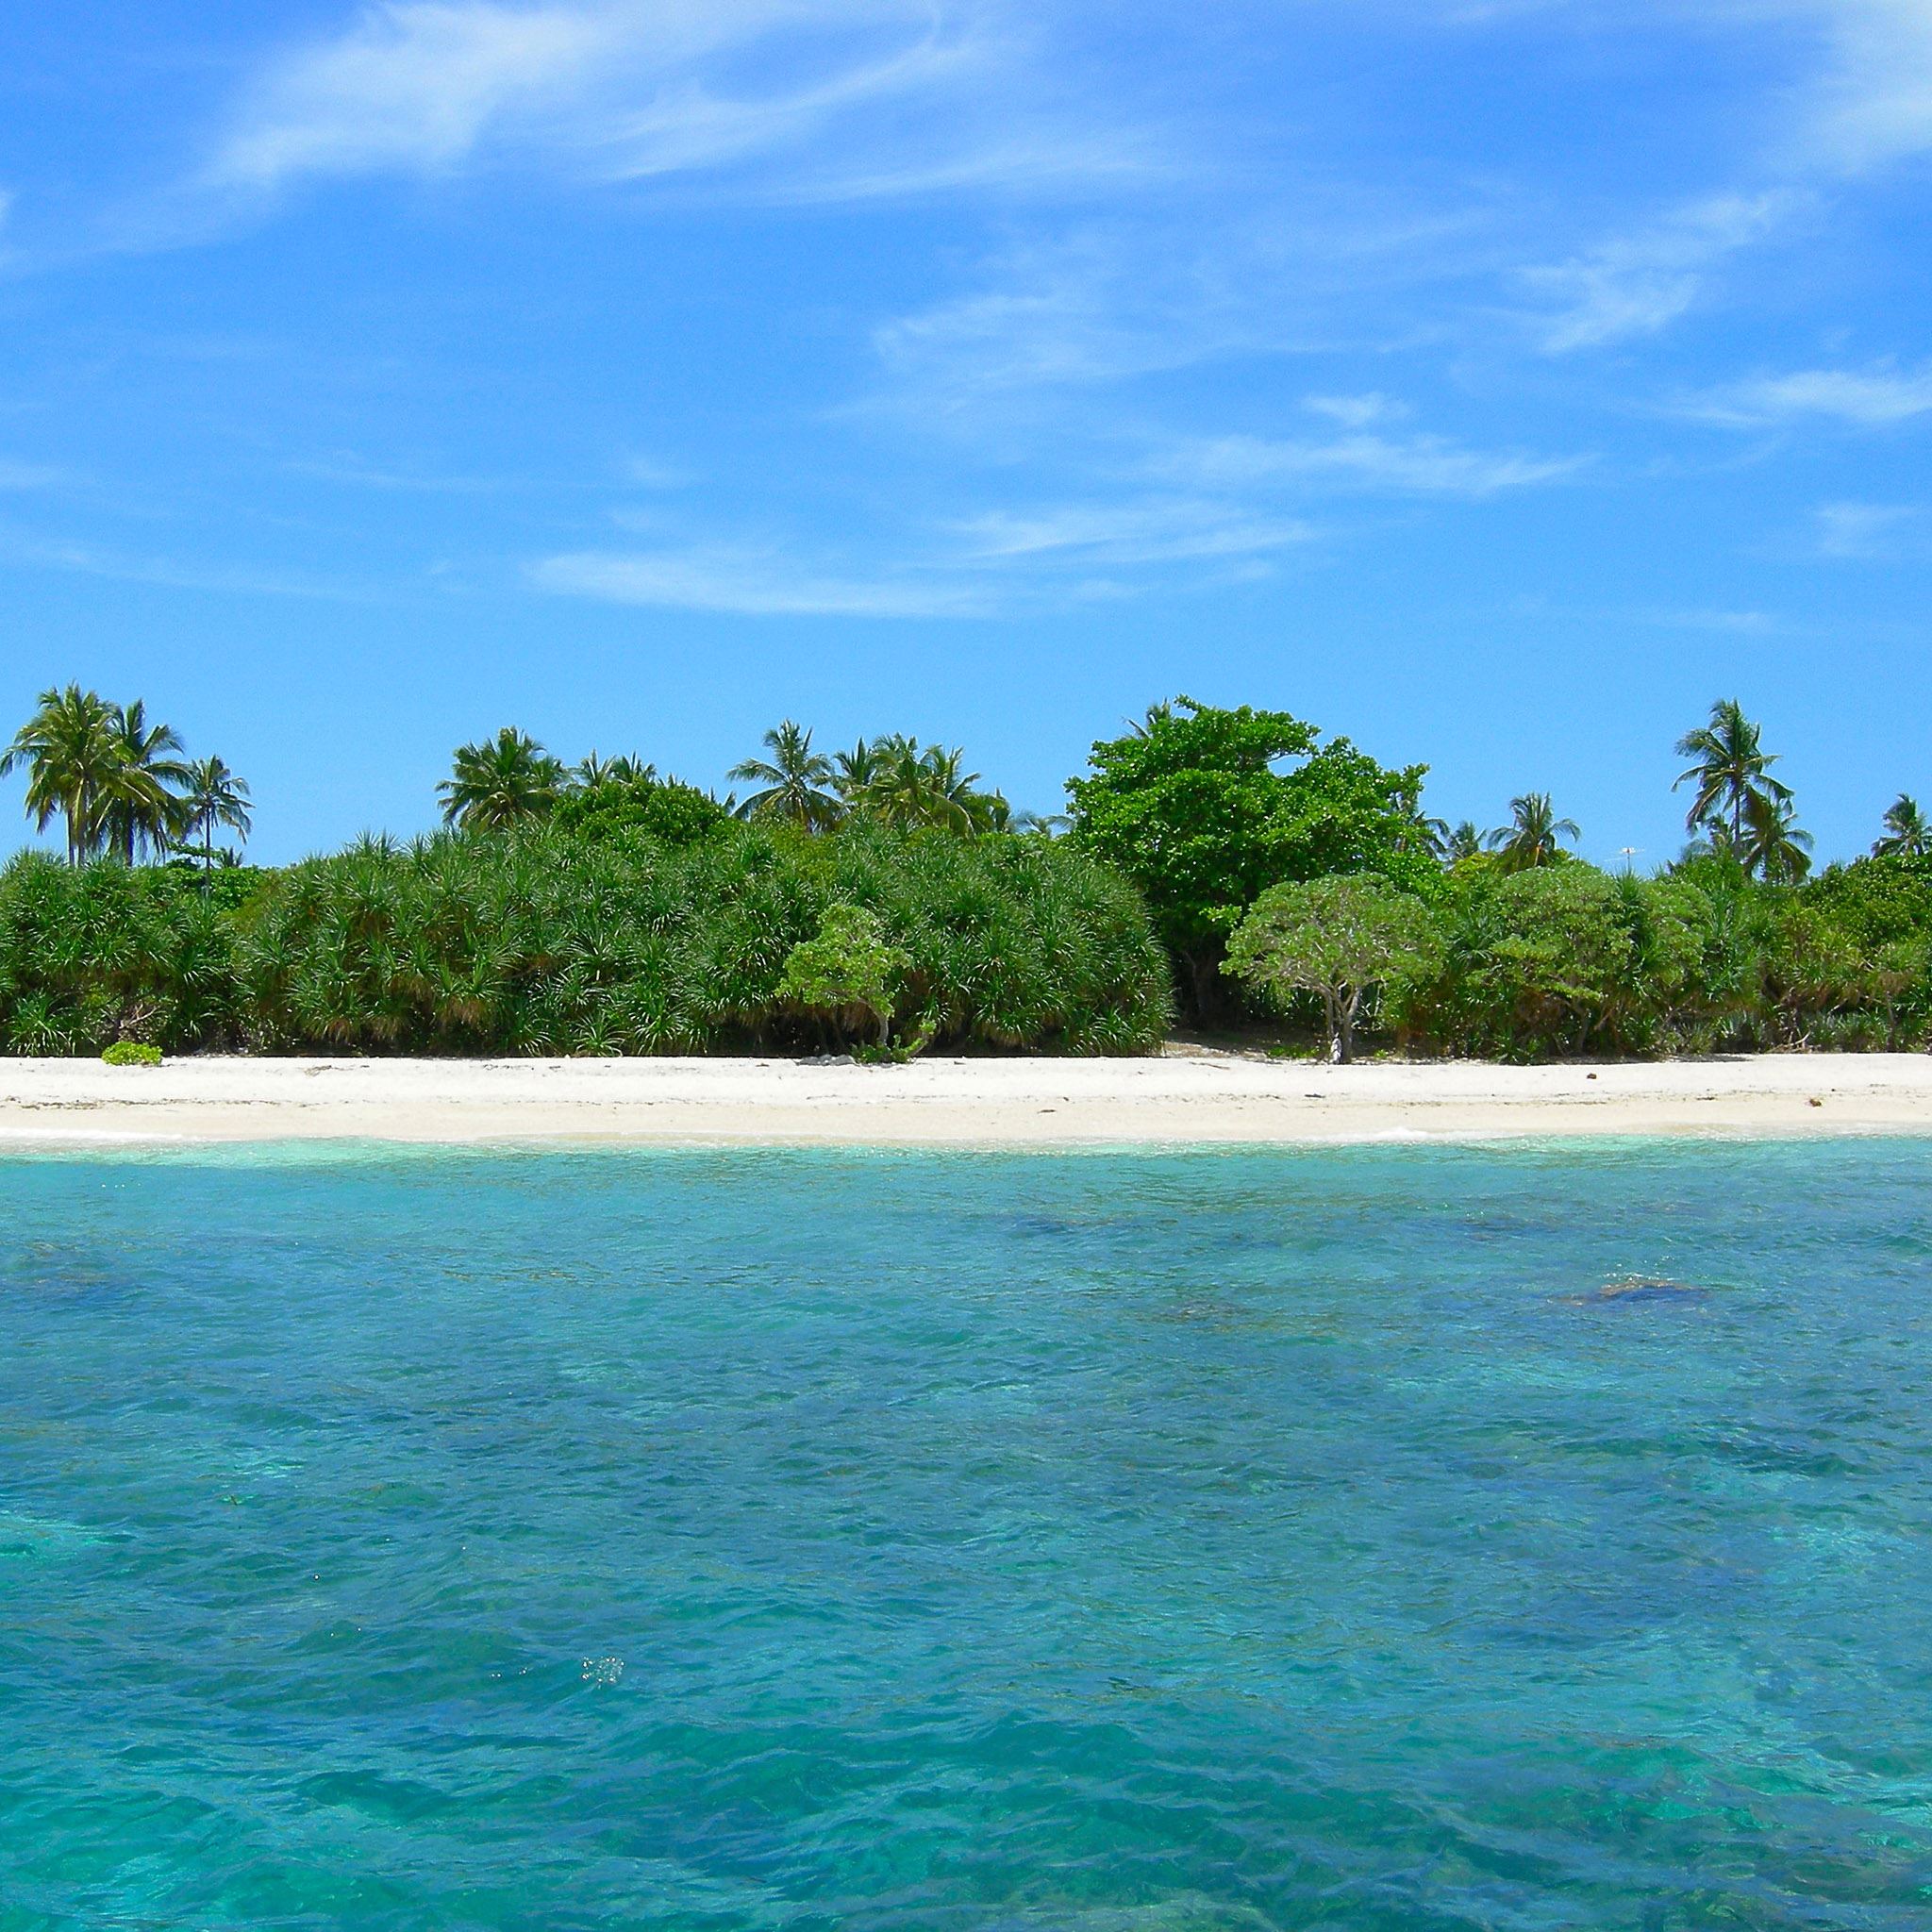 Tropical Clean Ocean Beach View iPad Air Wallpaper Free Download